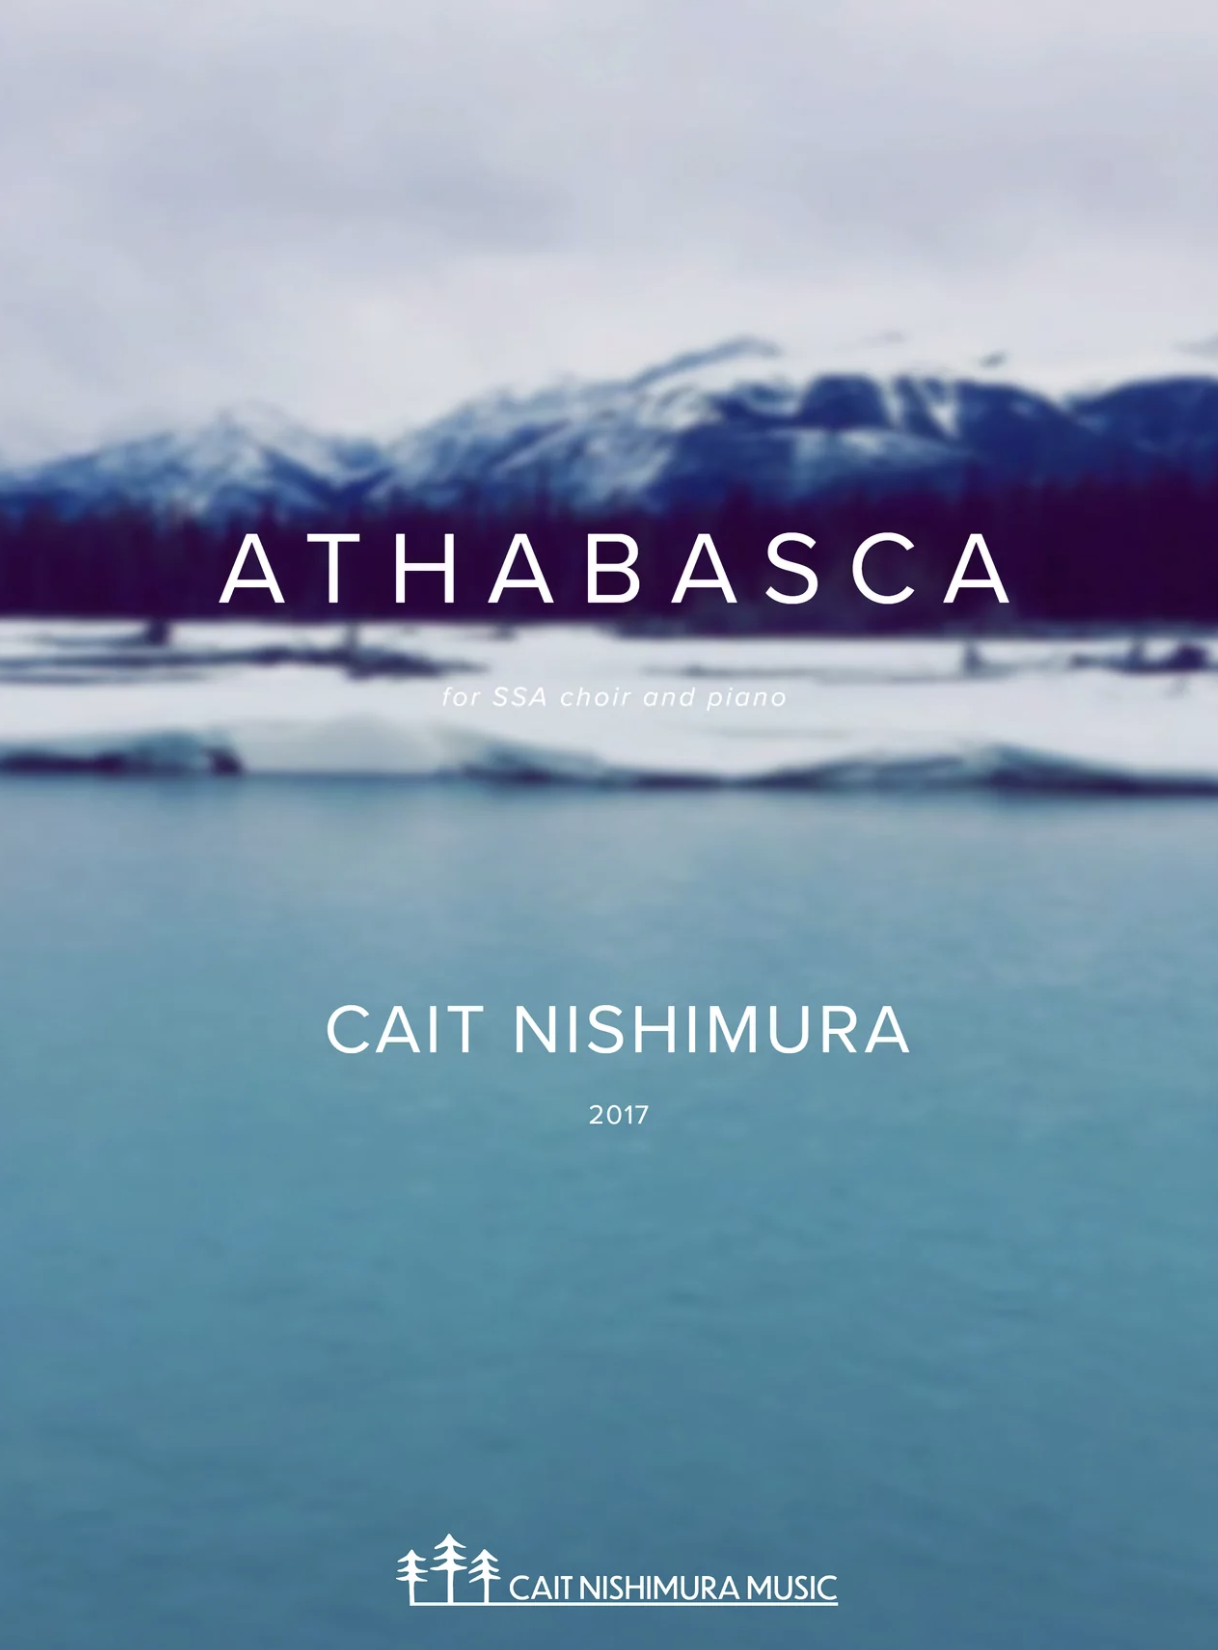 ATHABASCA by Cait Nishimura